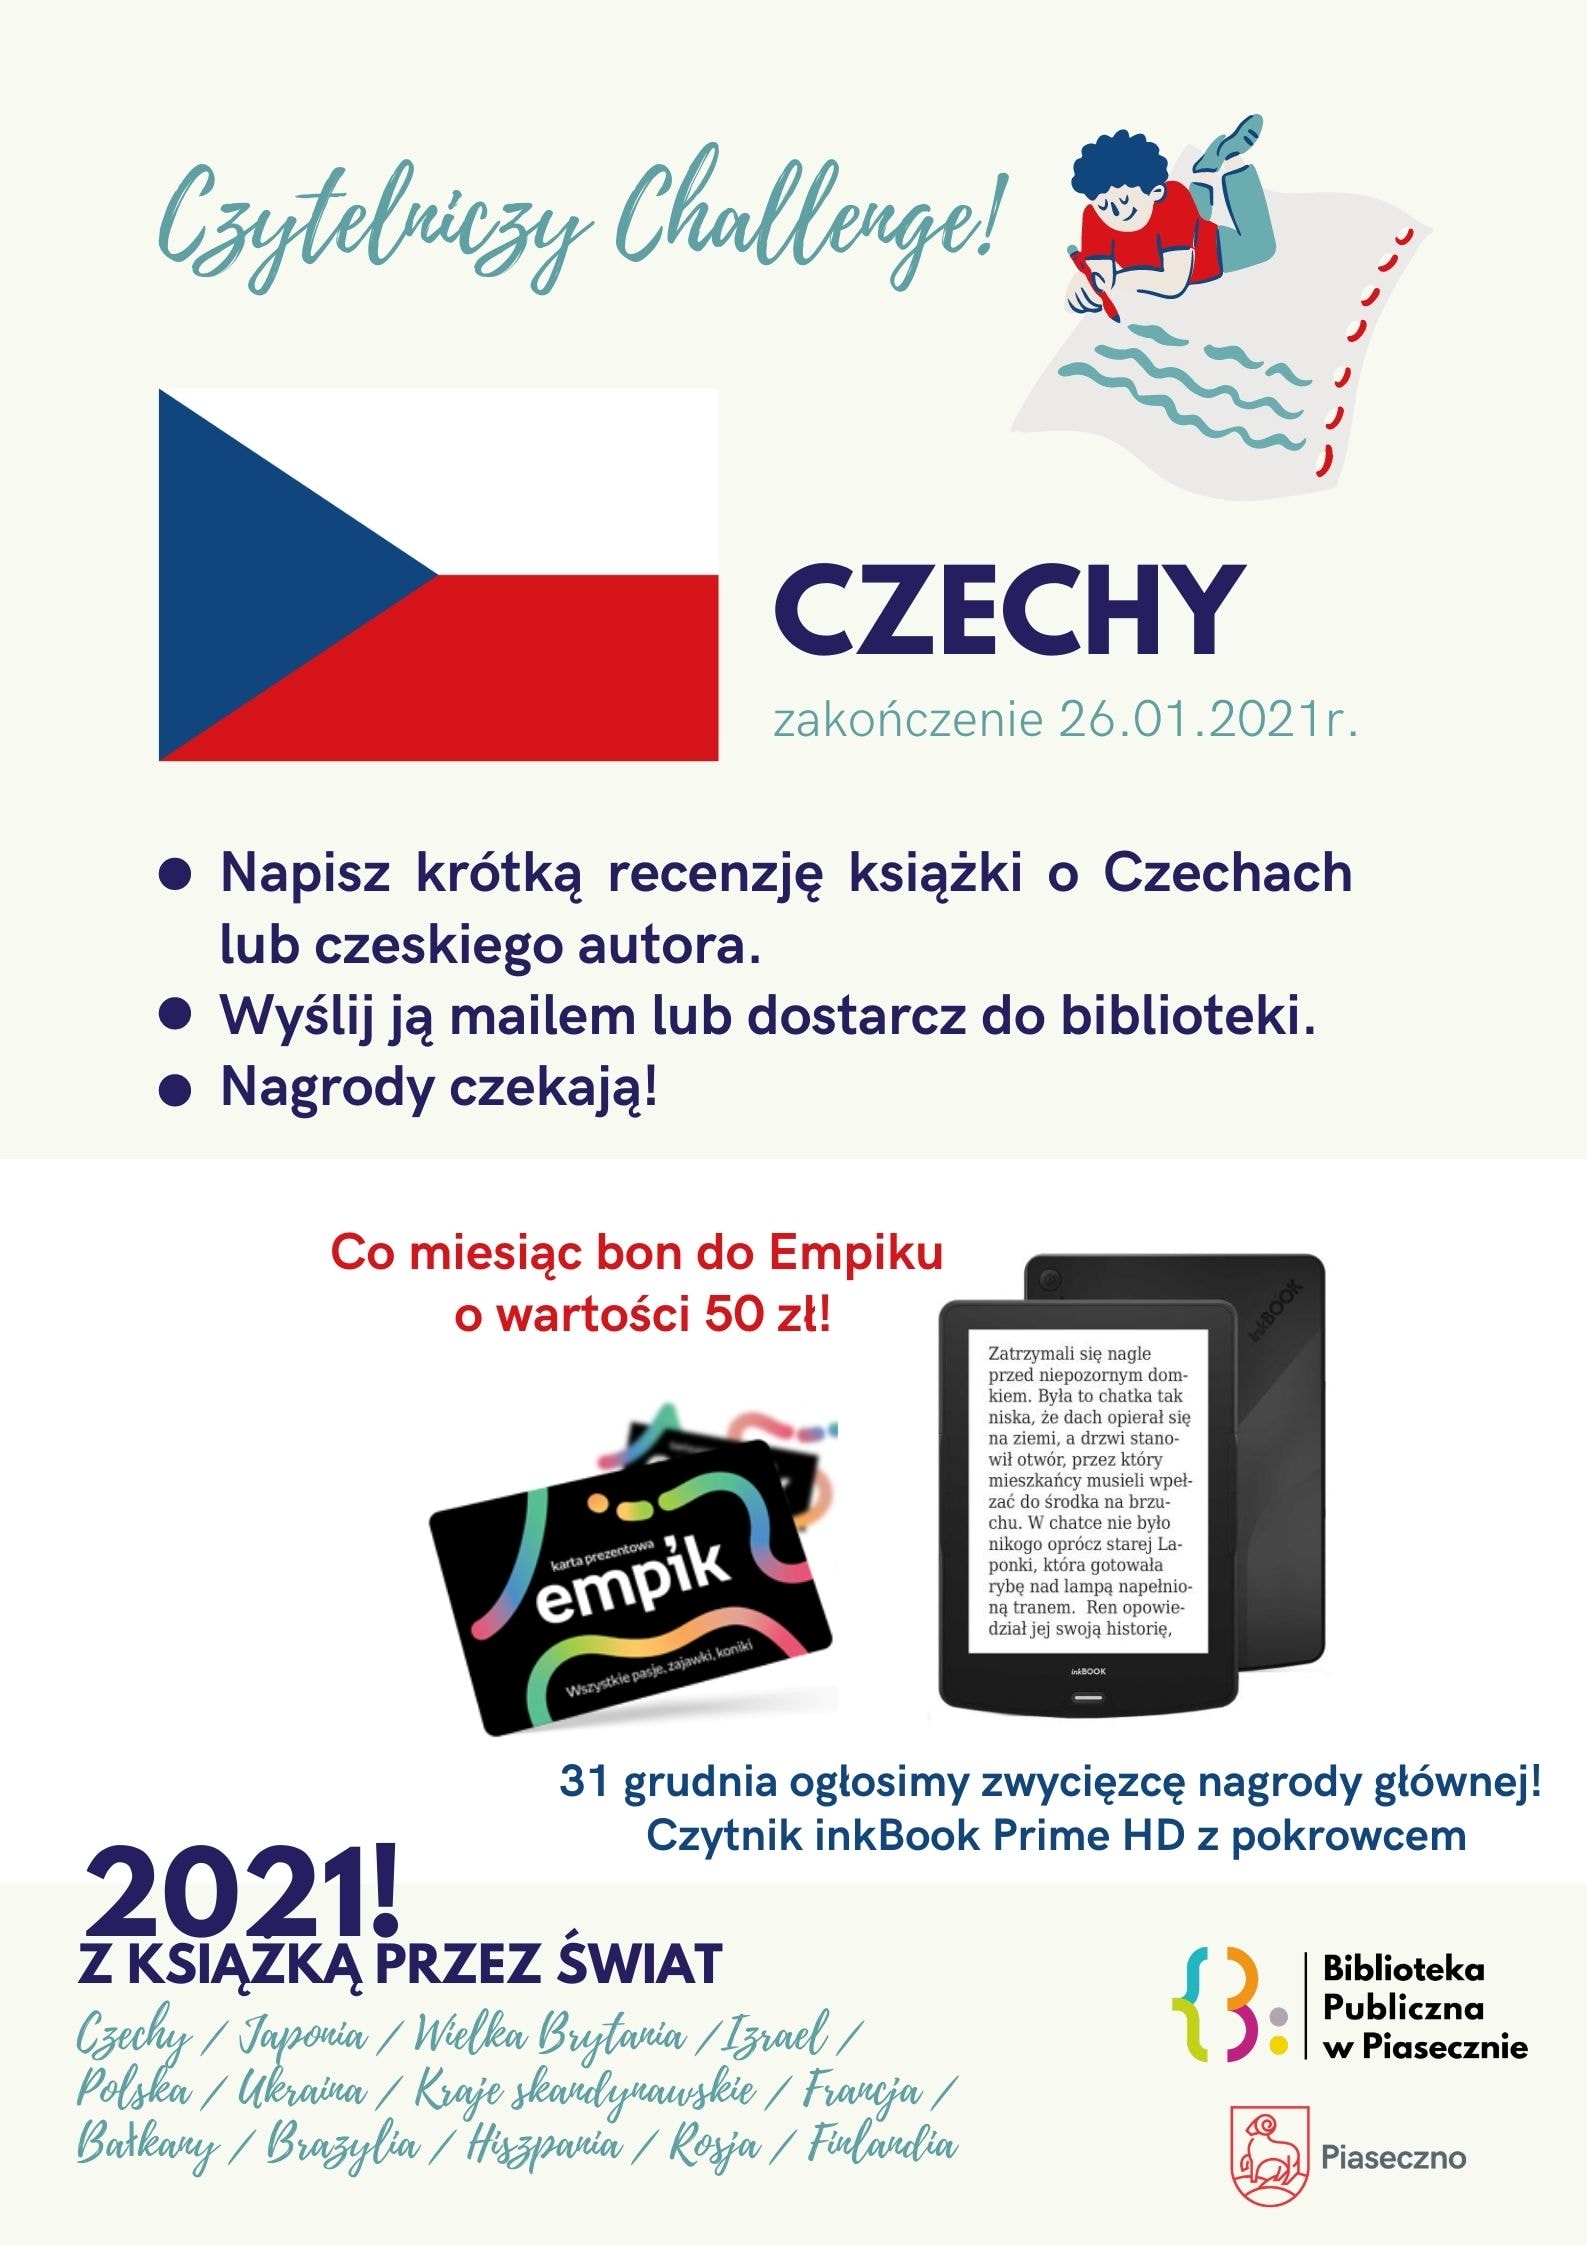 Czyteniczy Challenge Czechy 2021